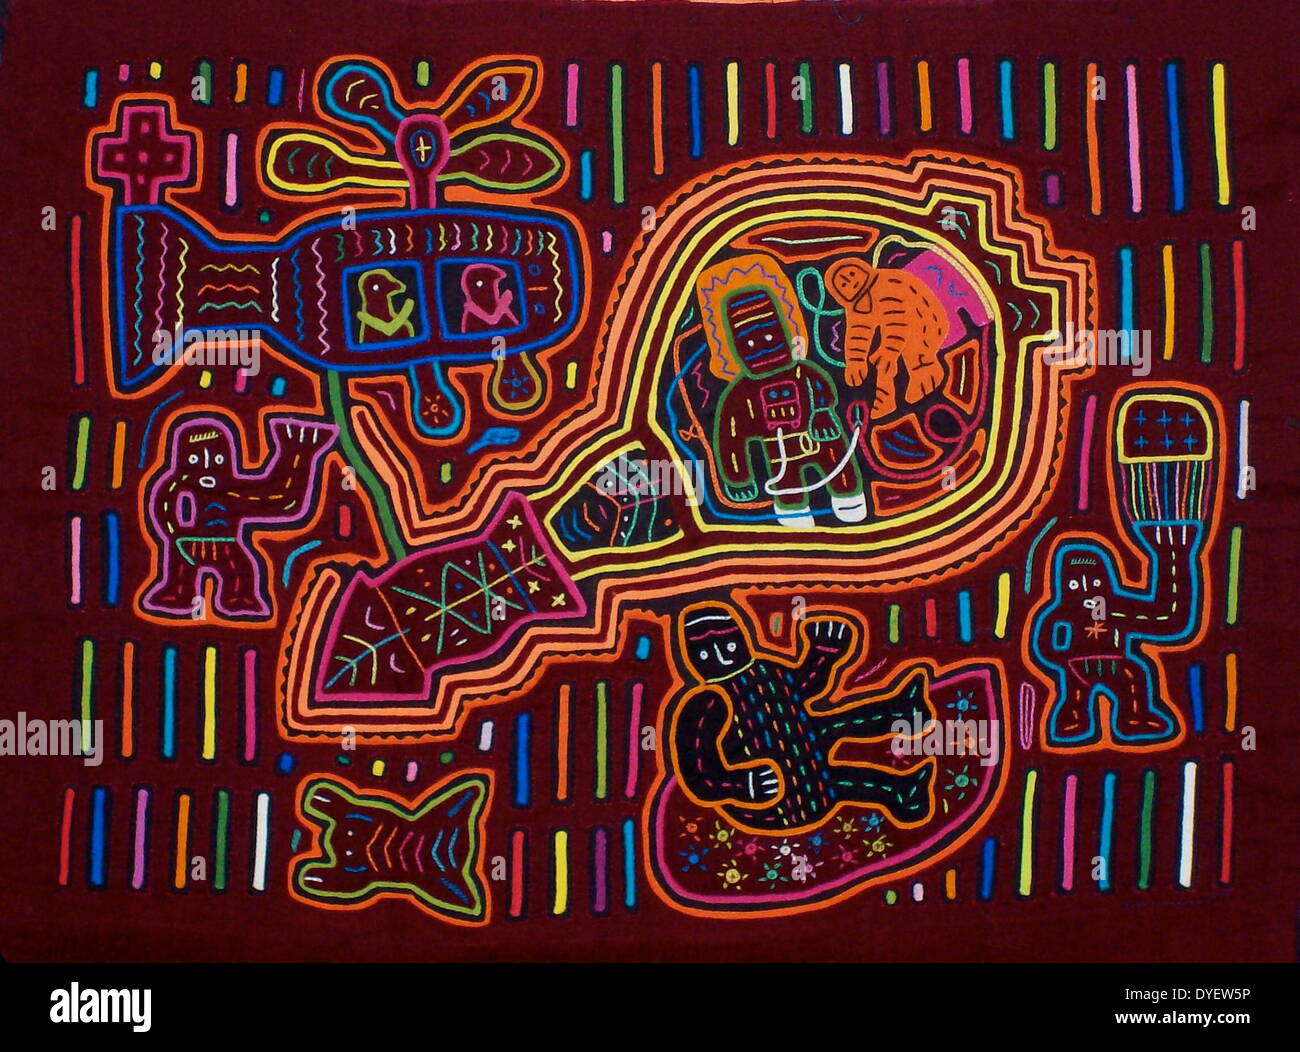 Mola da tessili Kuna artista indiano, raffigurante un moderno influenza sulla cultura Kuna. Dal San Blas arcipelago, Panama. Reverse applique design indossato sulla camicia femminile. Gli astronauti di ritornare sulla terra dopo aver visitato la luna. Foto Stock